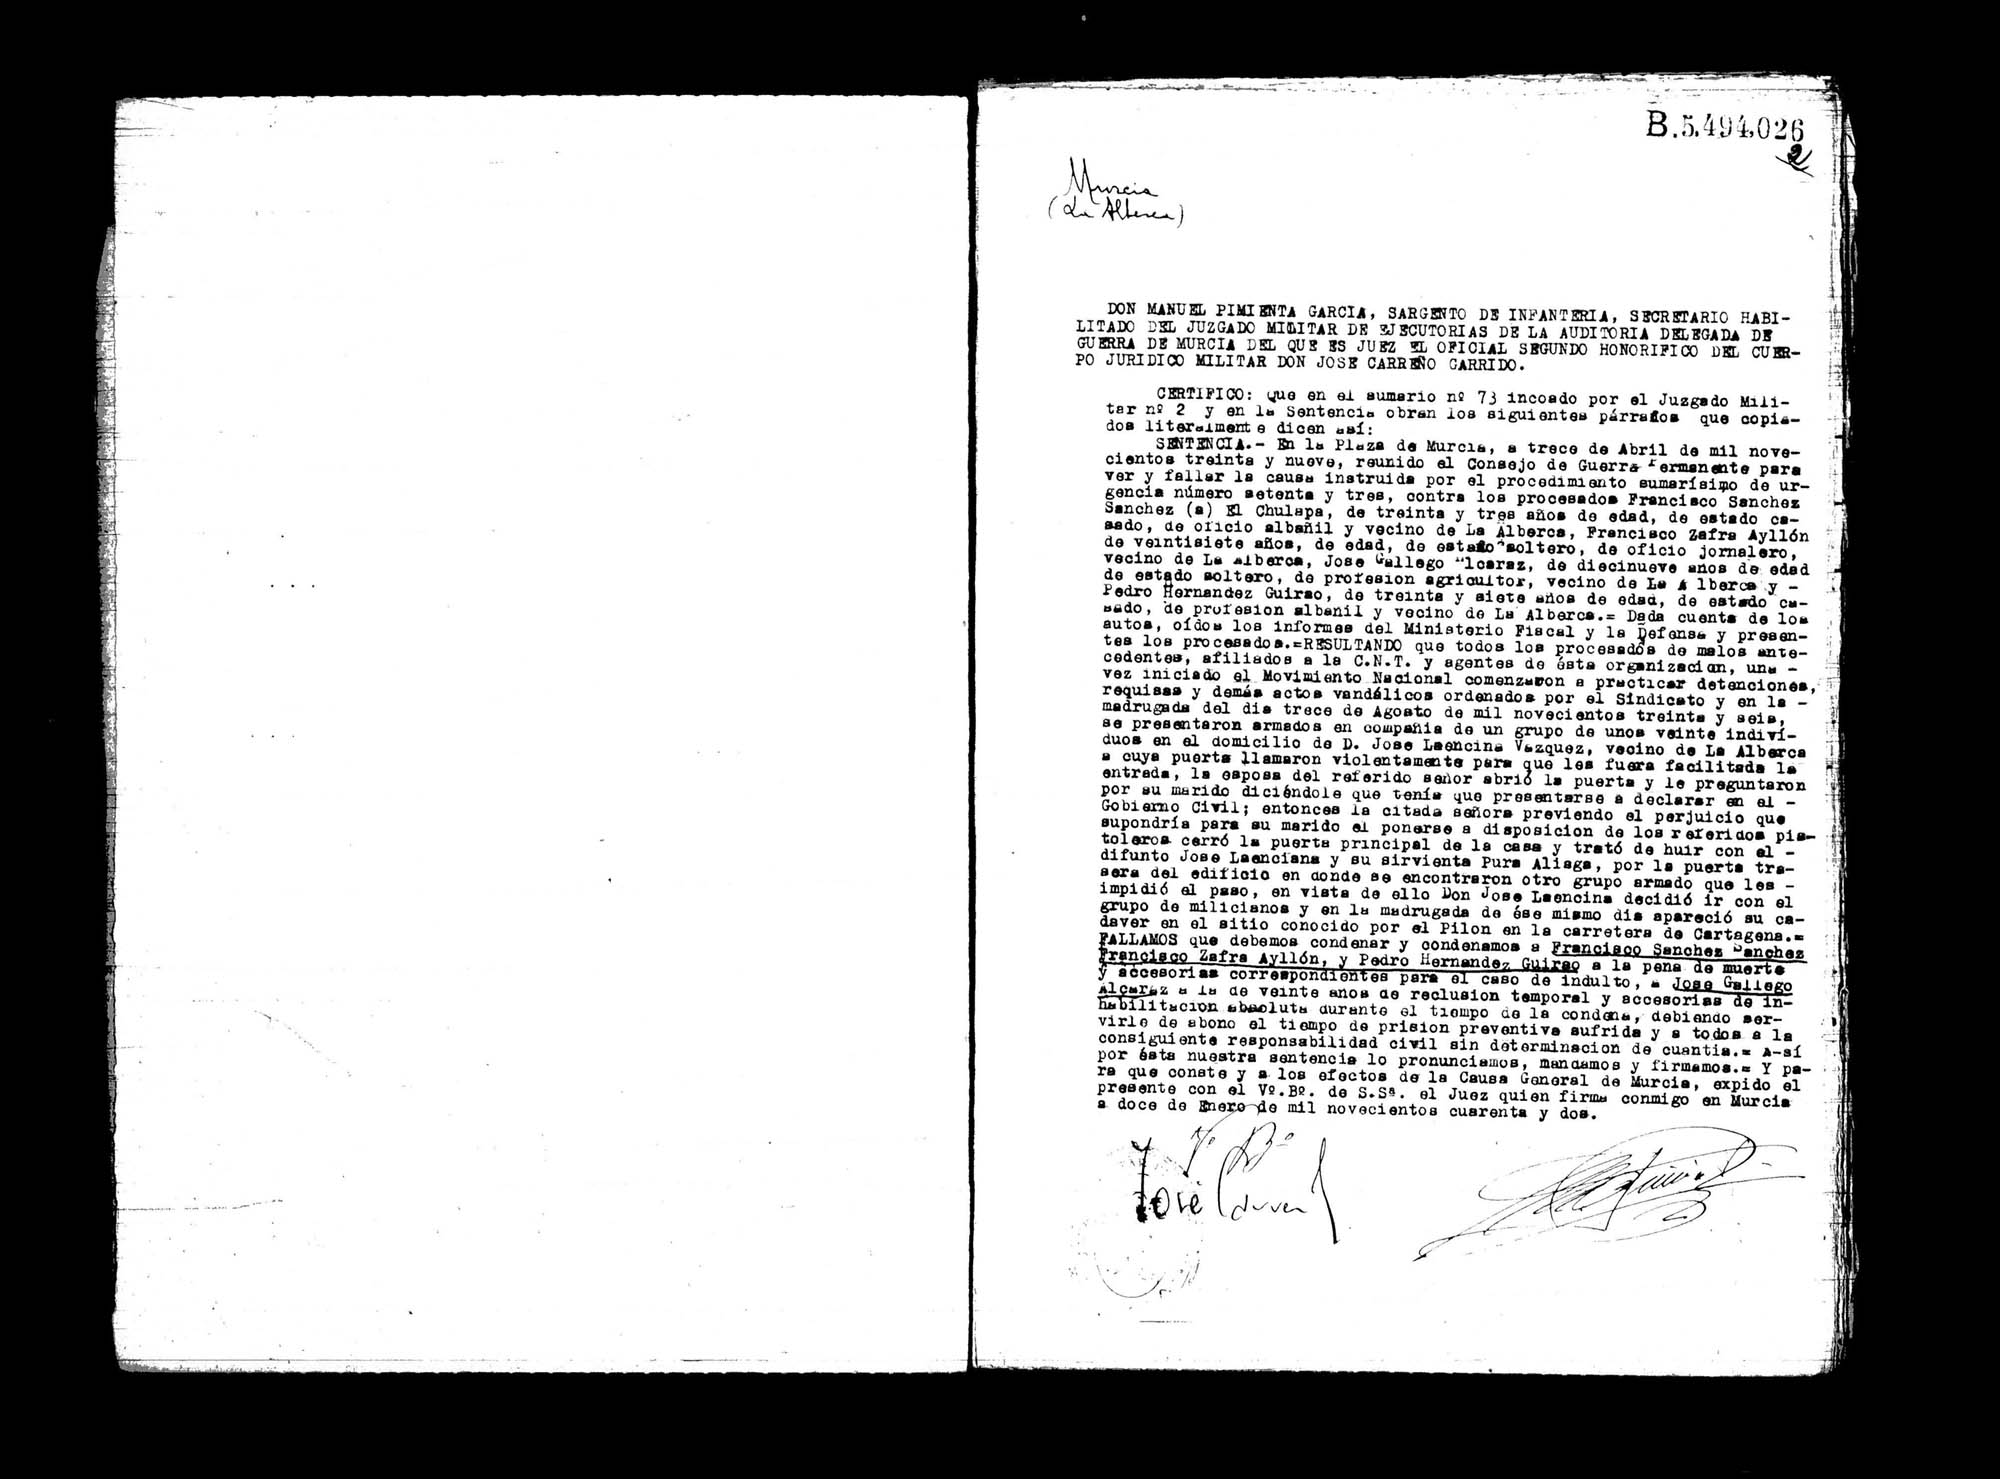 Certificado de la sentencia pronunciada contra Francisco Sánchez Sánchez, Francisco Zafra Ayllón, José Gallego Alcaraz y Pedro Hernández Guirao, causa 73, el 13 de abril de 1939.